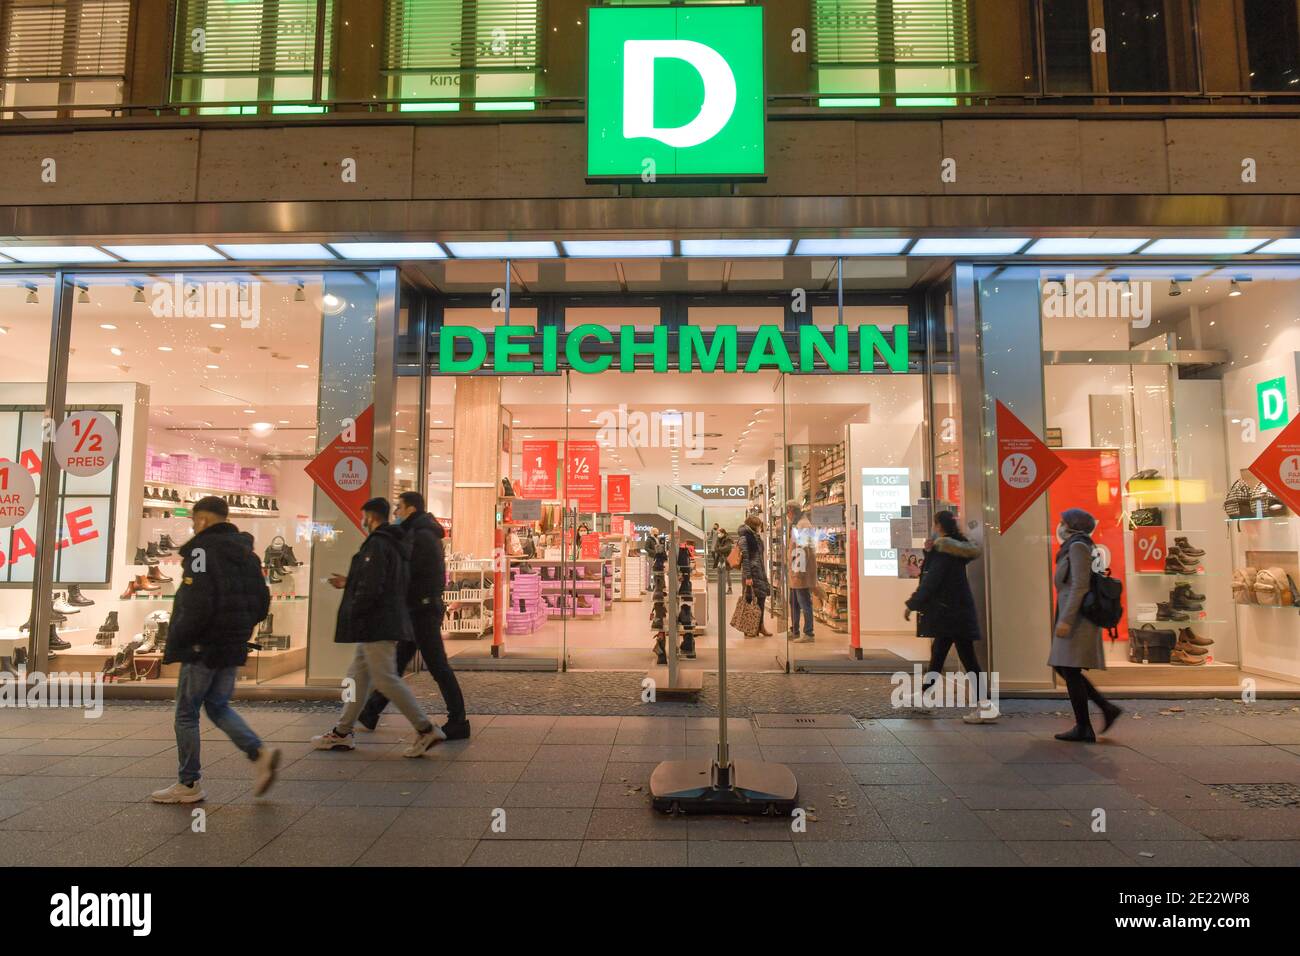 Deichmann Schuhgeschäft, Tauentzienstraße, Charlottenburg, Berlin, Deutschland Stock Photo